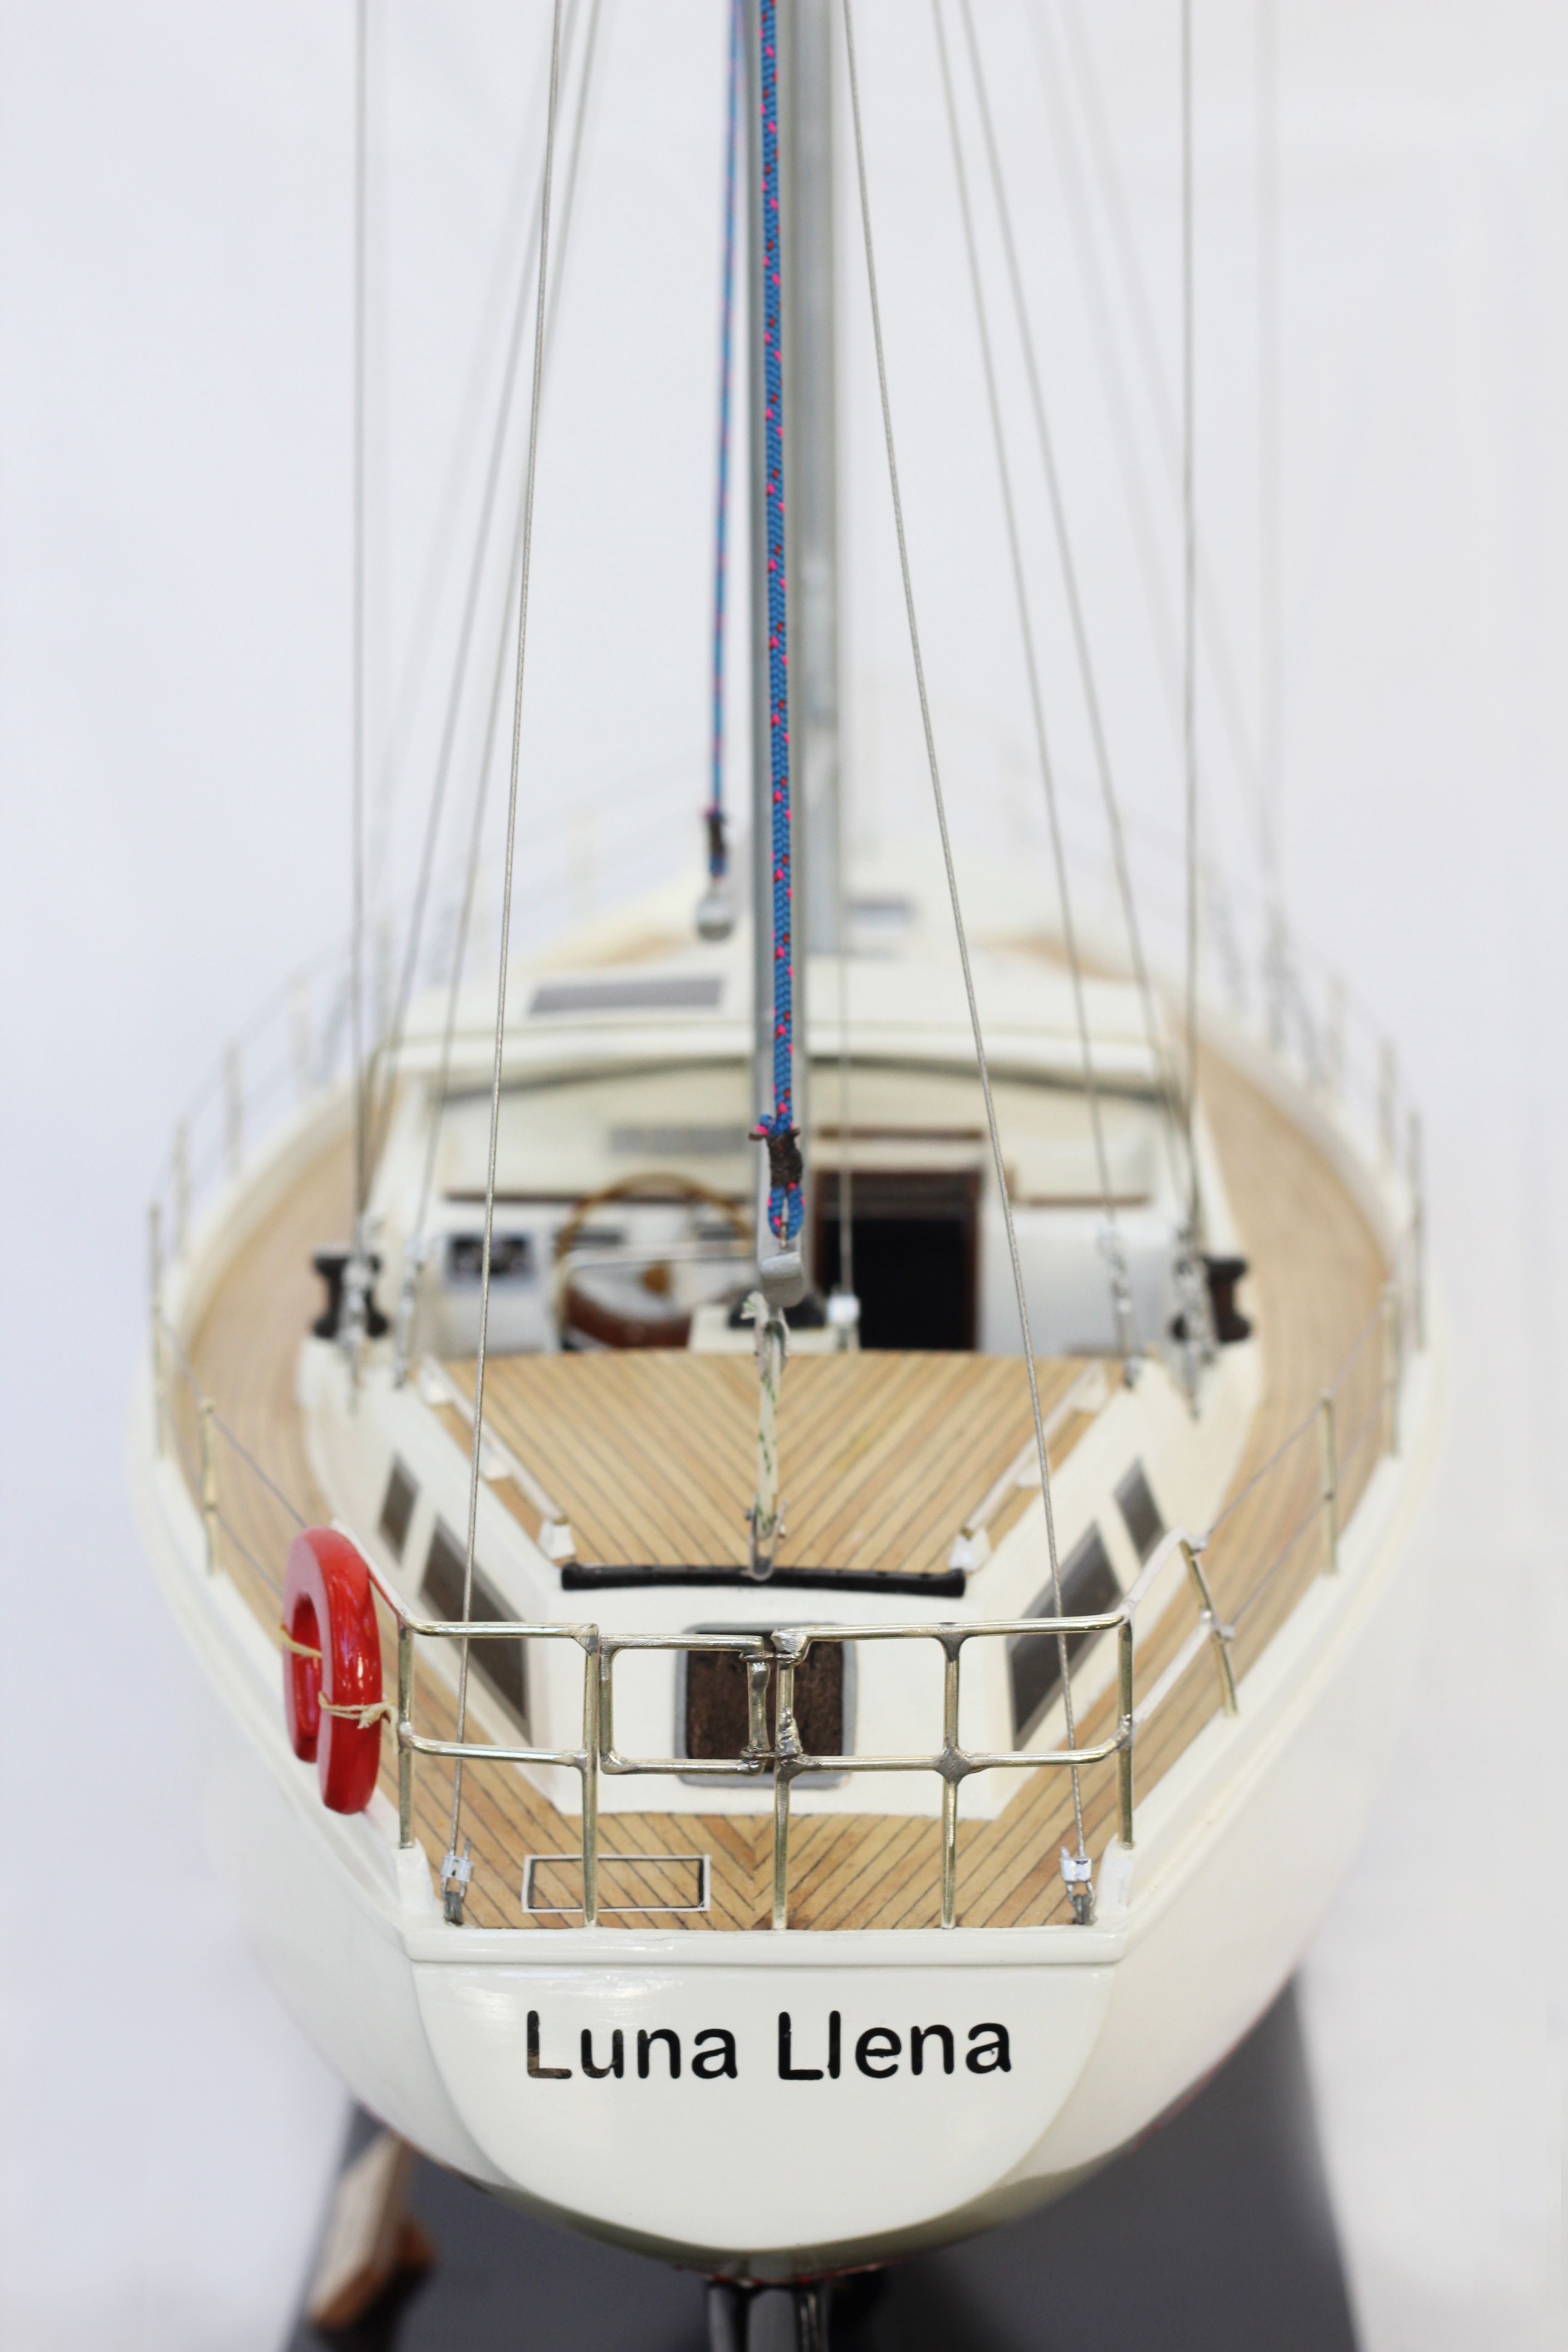 Amel Model Yacht (Superior Range) - HM